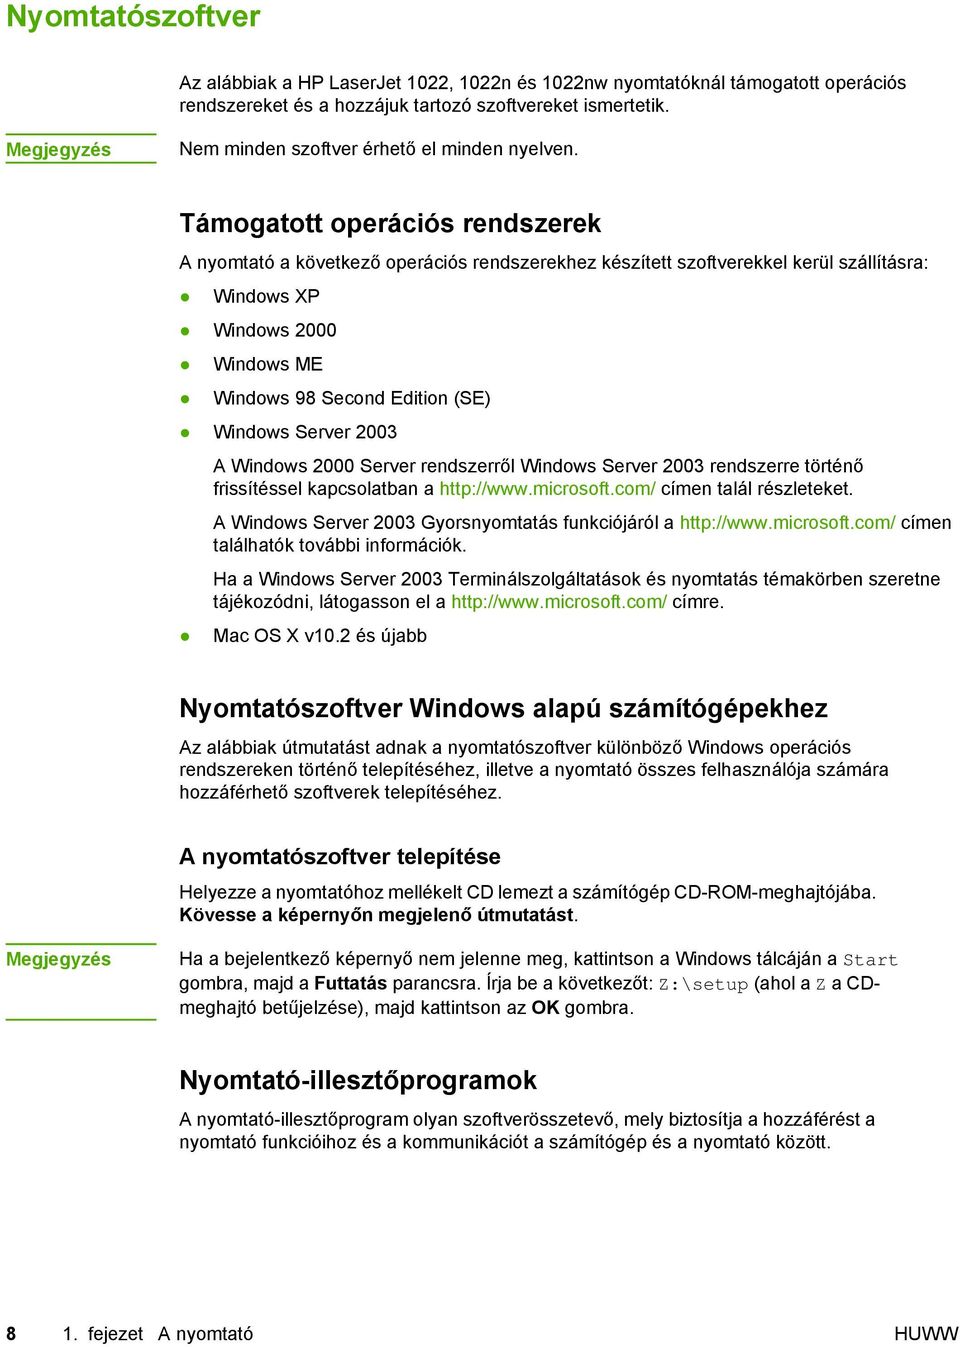 HP LaserJet 1022, 1022n, 1022nw Felhasználói kézikönyv - PDF Ingyenes  letöltés